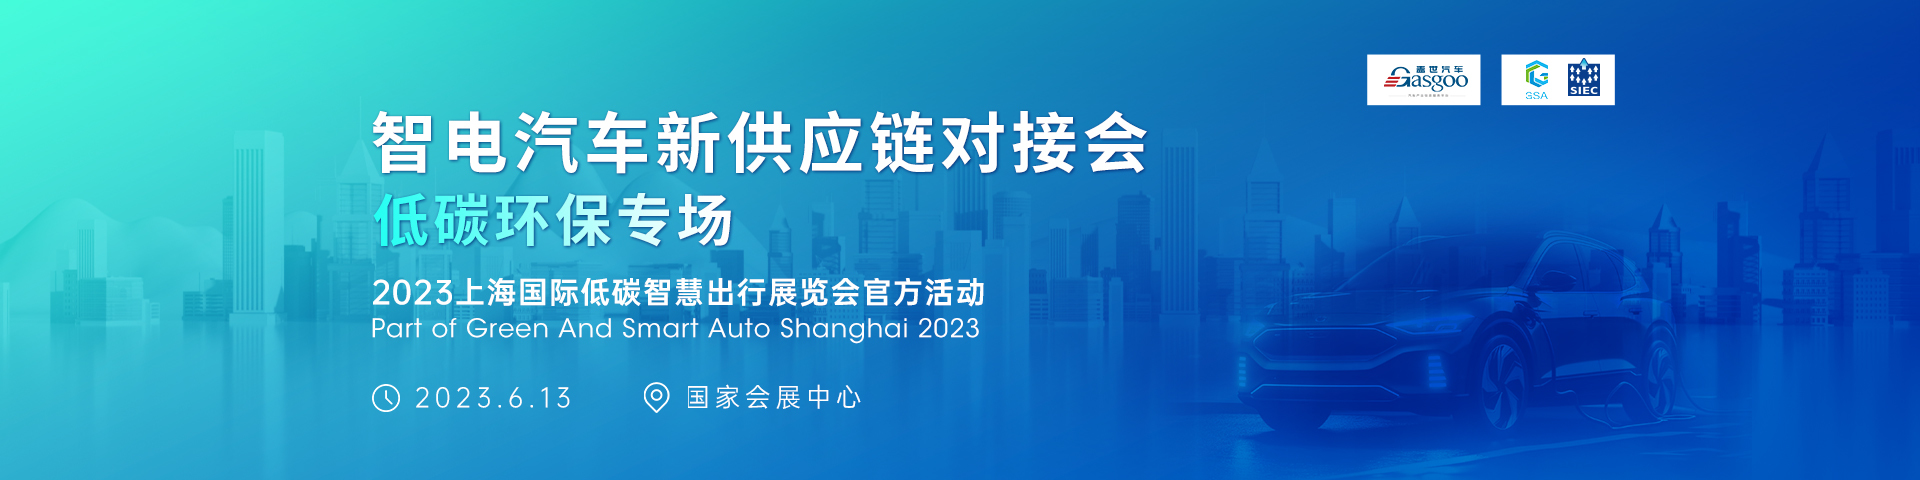 智电汽车新供应链对接会-上海国际低碳智慧出行展览会官方活动